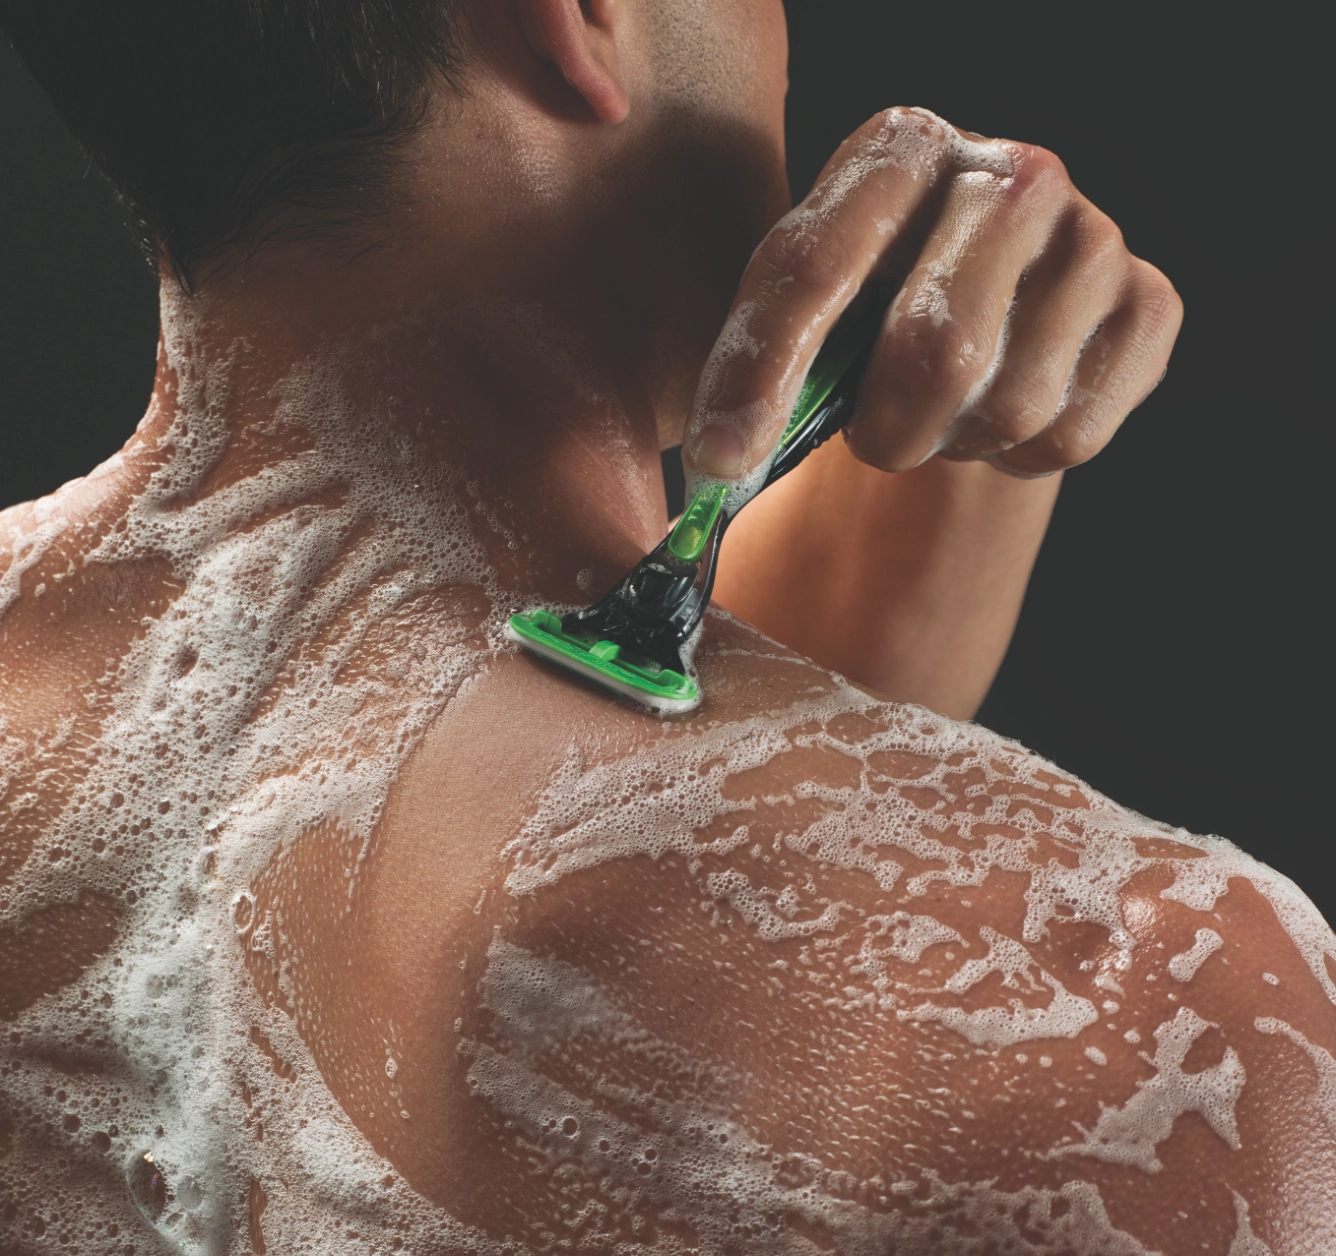 Shaving system built for male terrain